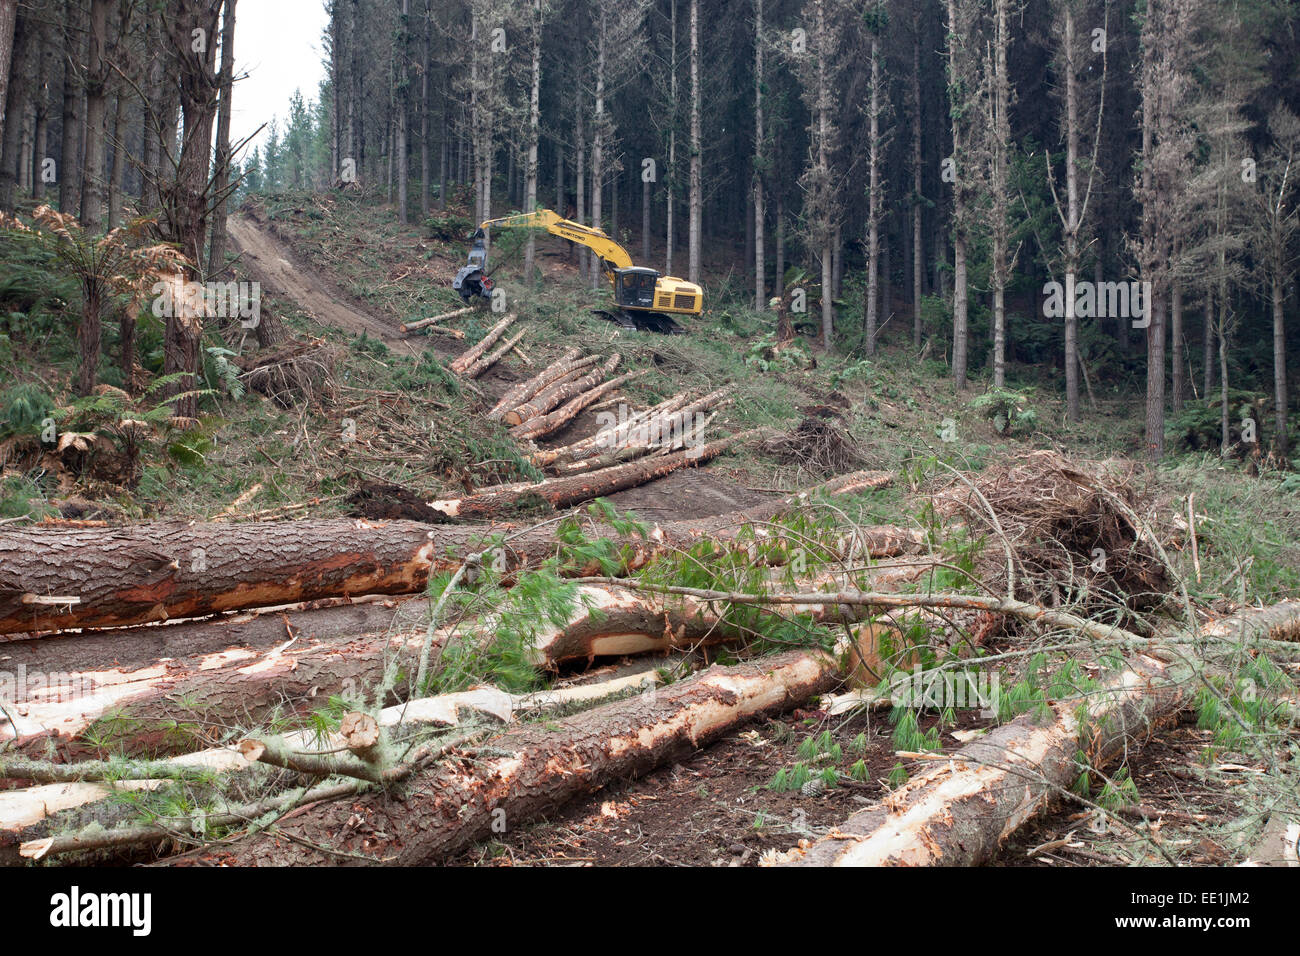 La machine d'abattage forestier, Waikato, île du Nord, Nouvelle-Zélande, Pacifique Banque D'Images